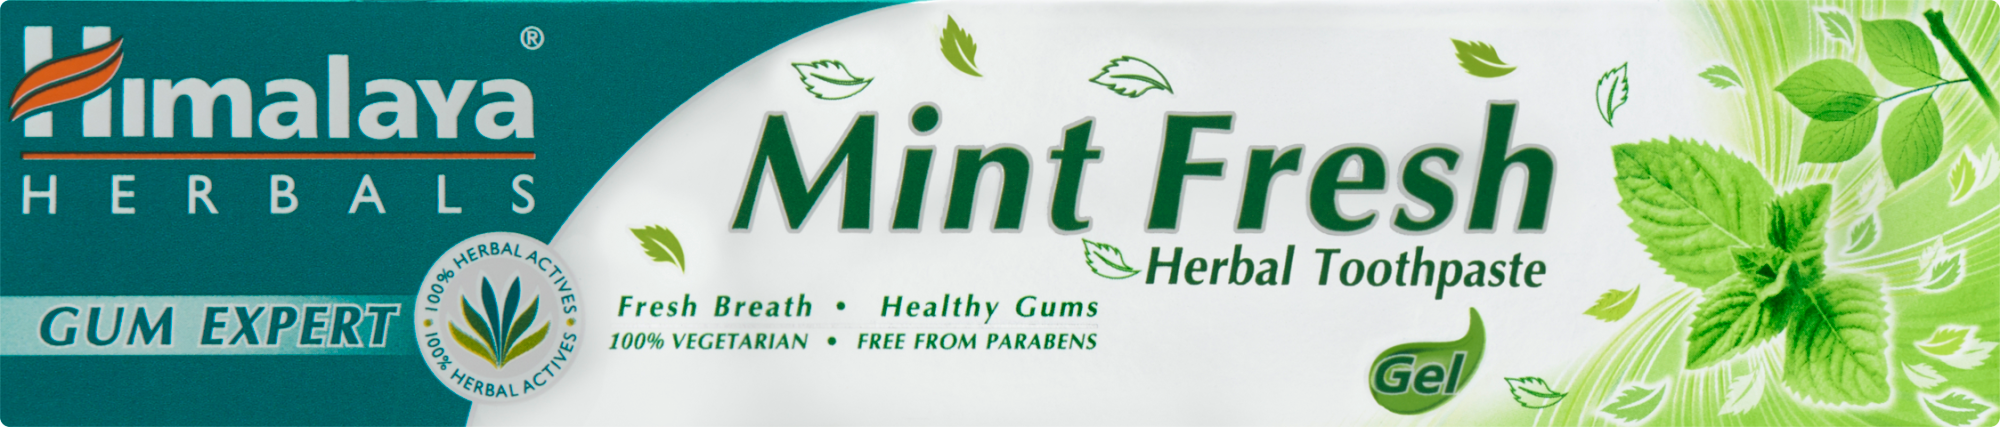 Himalaya Gum Expert Mint Fresh gyógynövényes fogkrém 75 ml